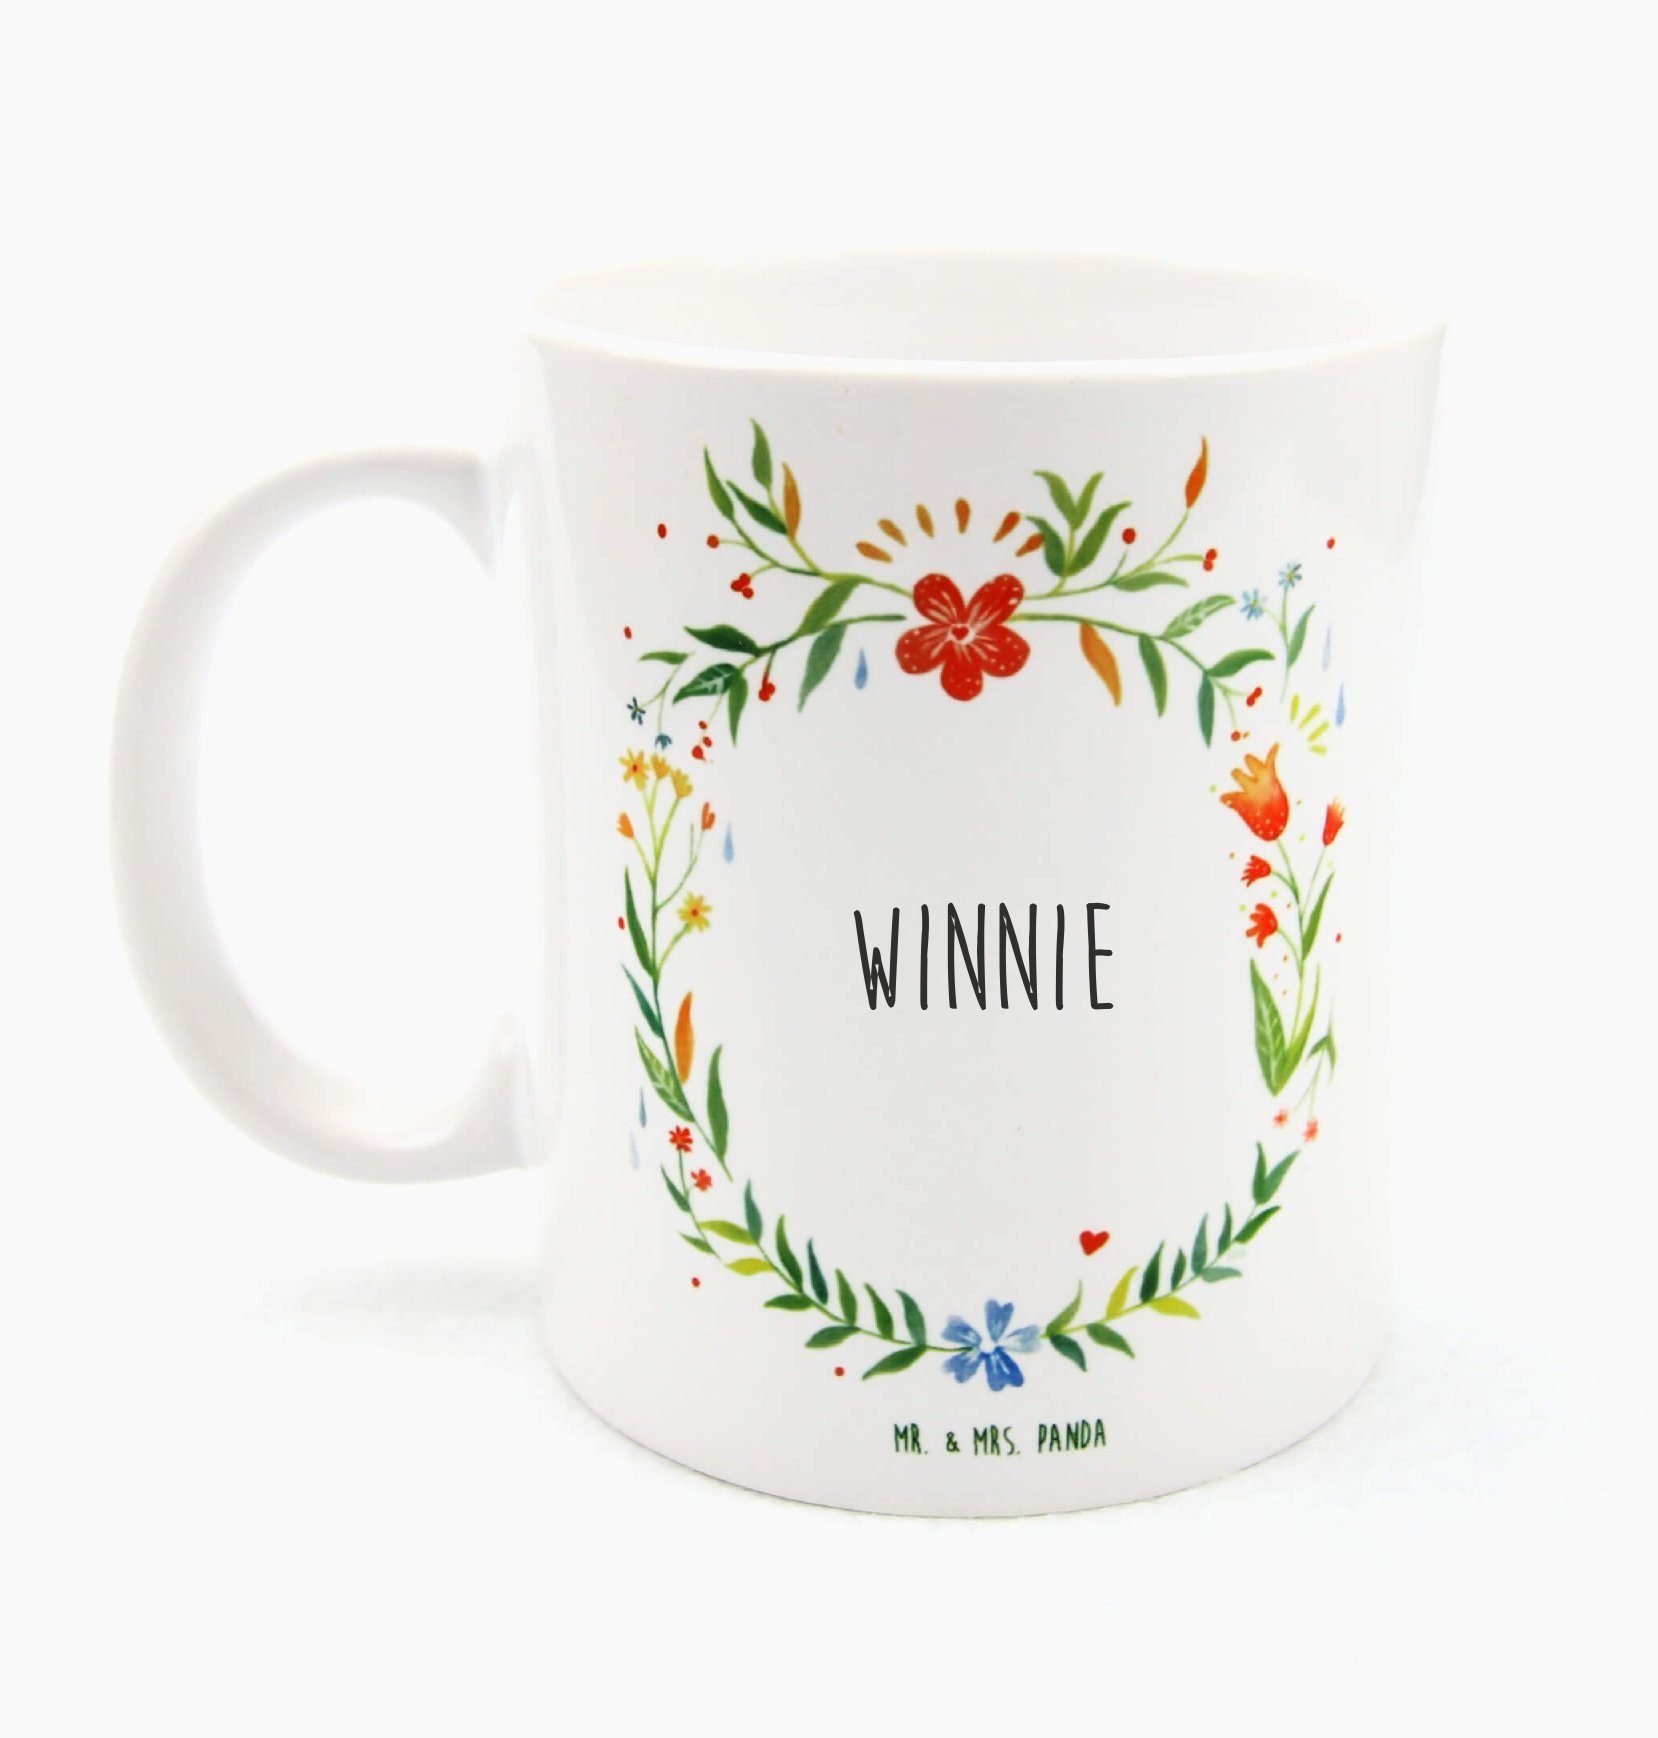 Mr. & Mrs. Panda Tasse Winnie - Geschenk, Porzellantasse, Tasse, Kaffeetasse, Keramiktasse, Keramik